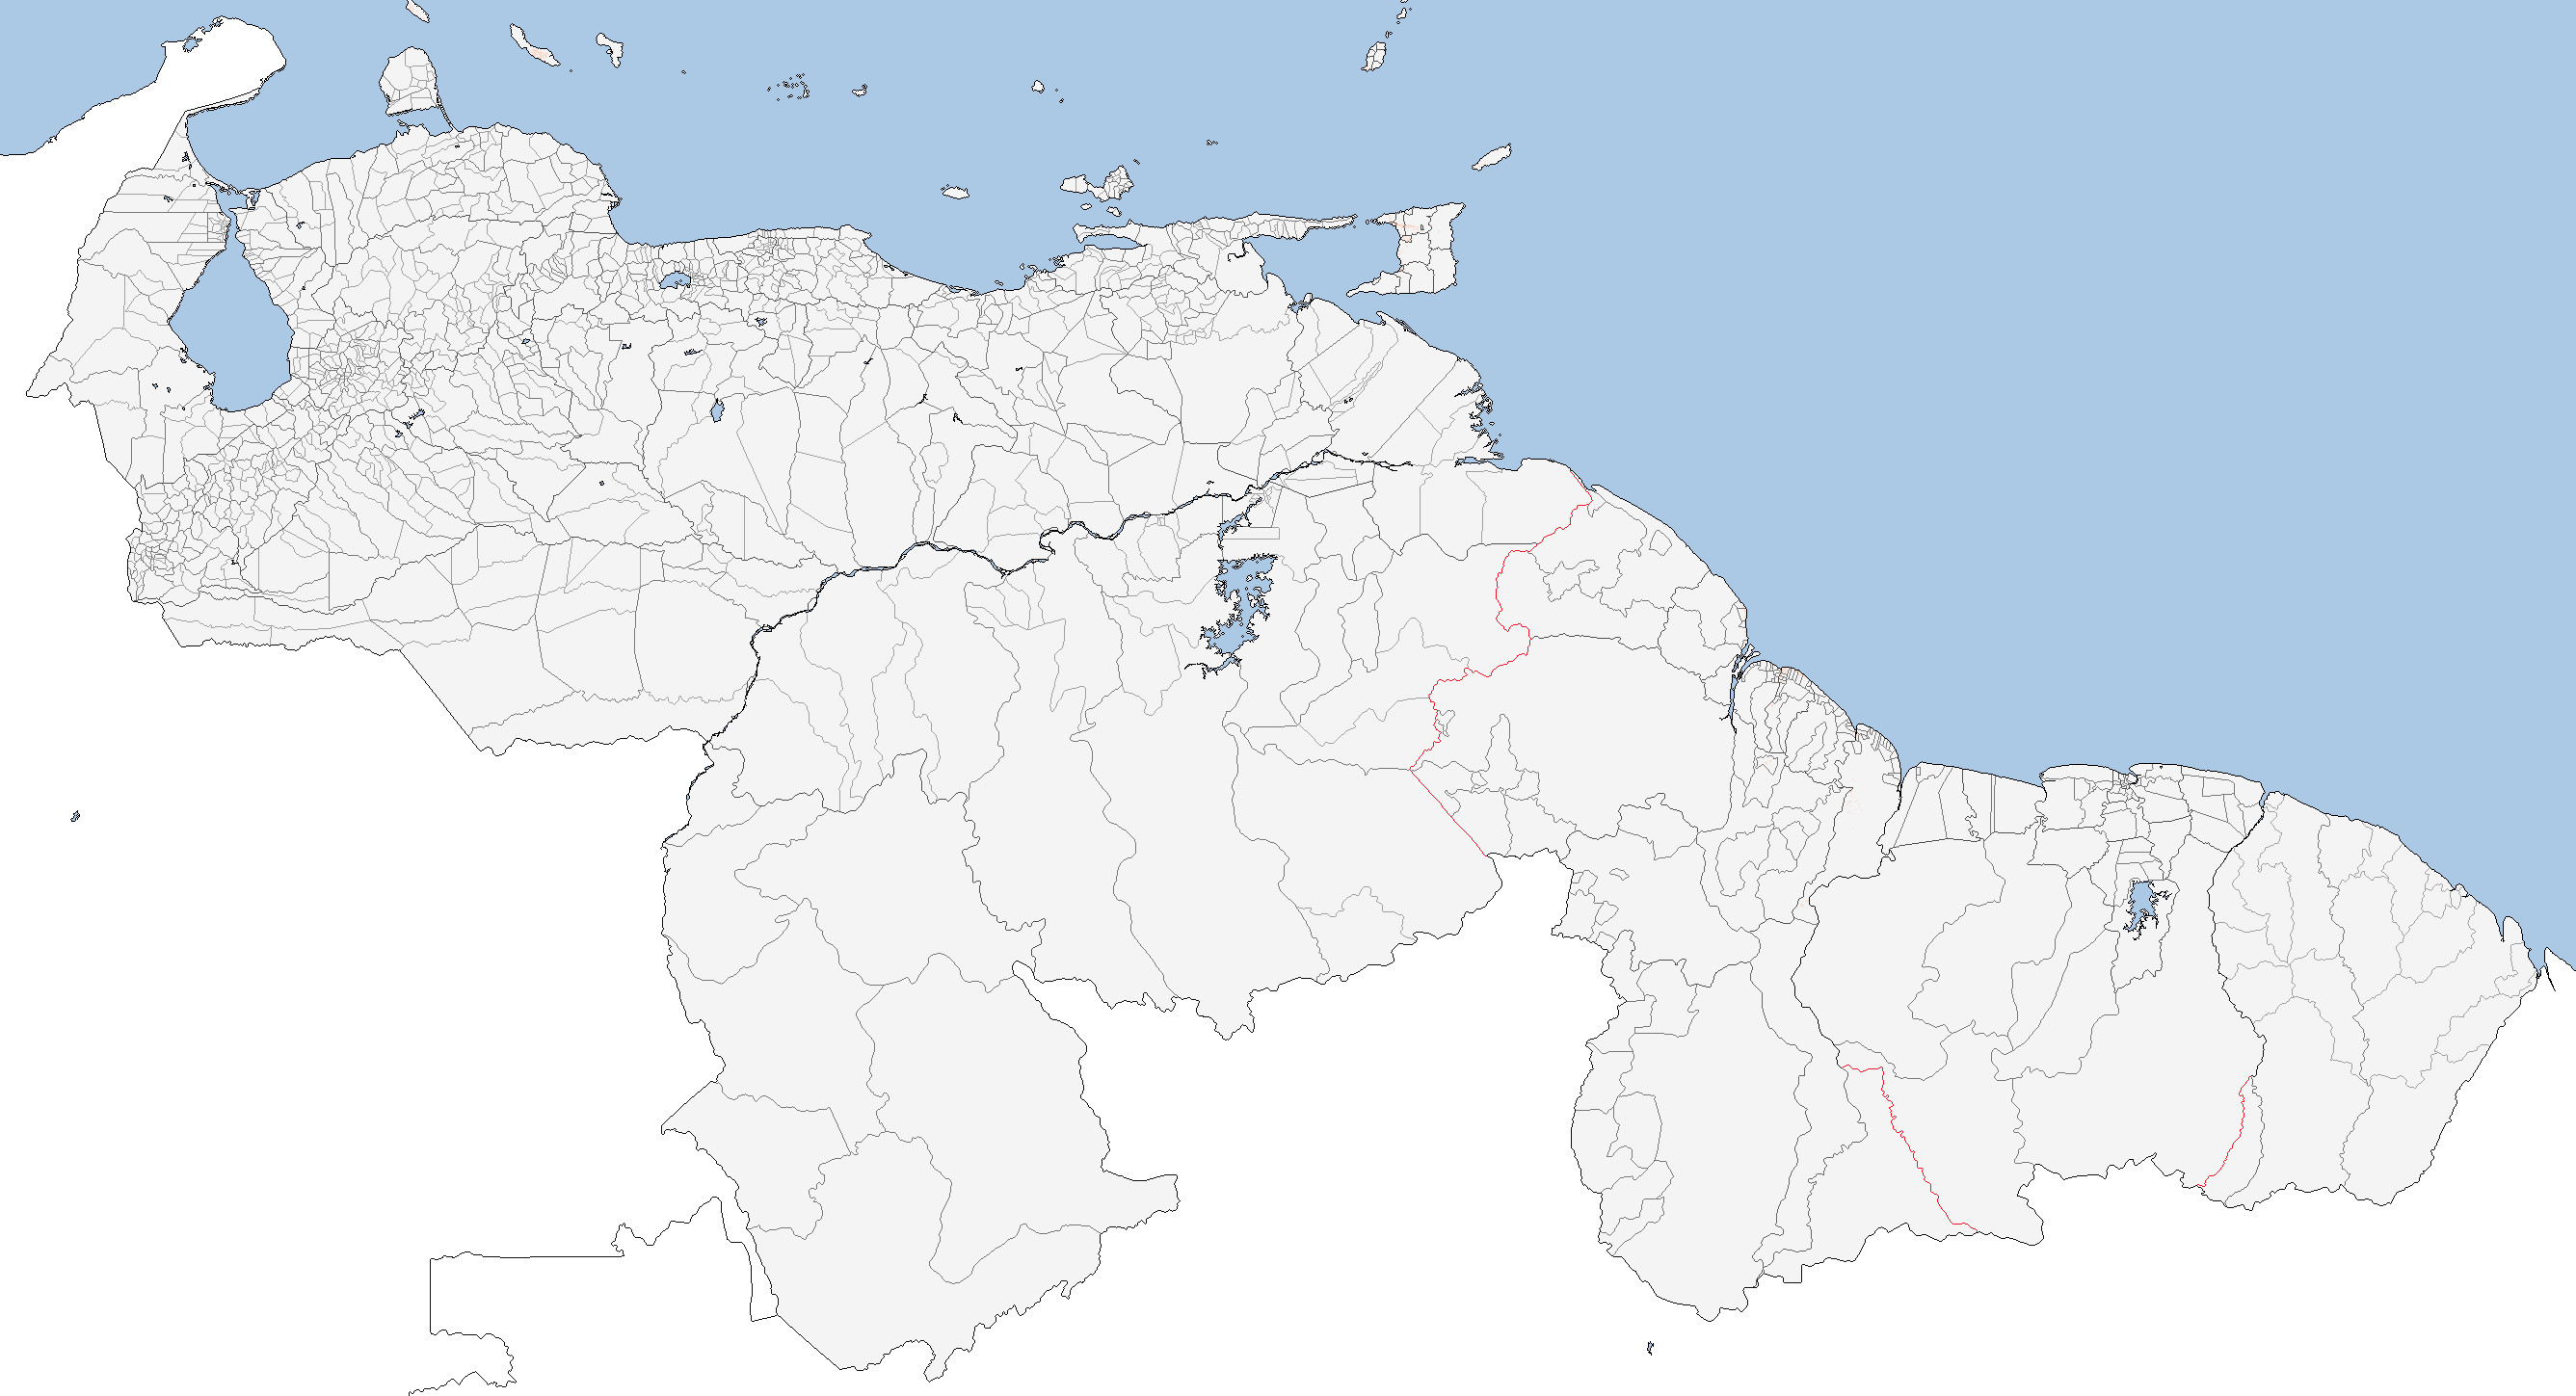 venezuela with Disputed borders.jpg